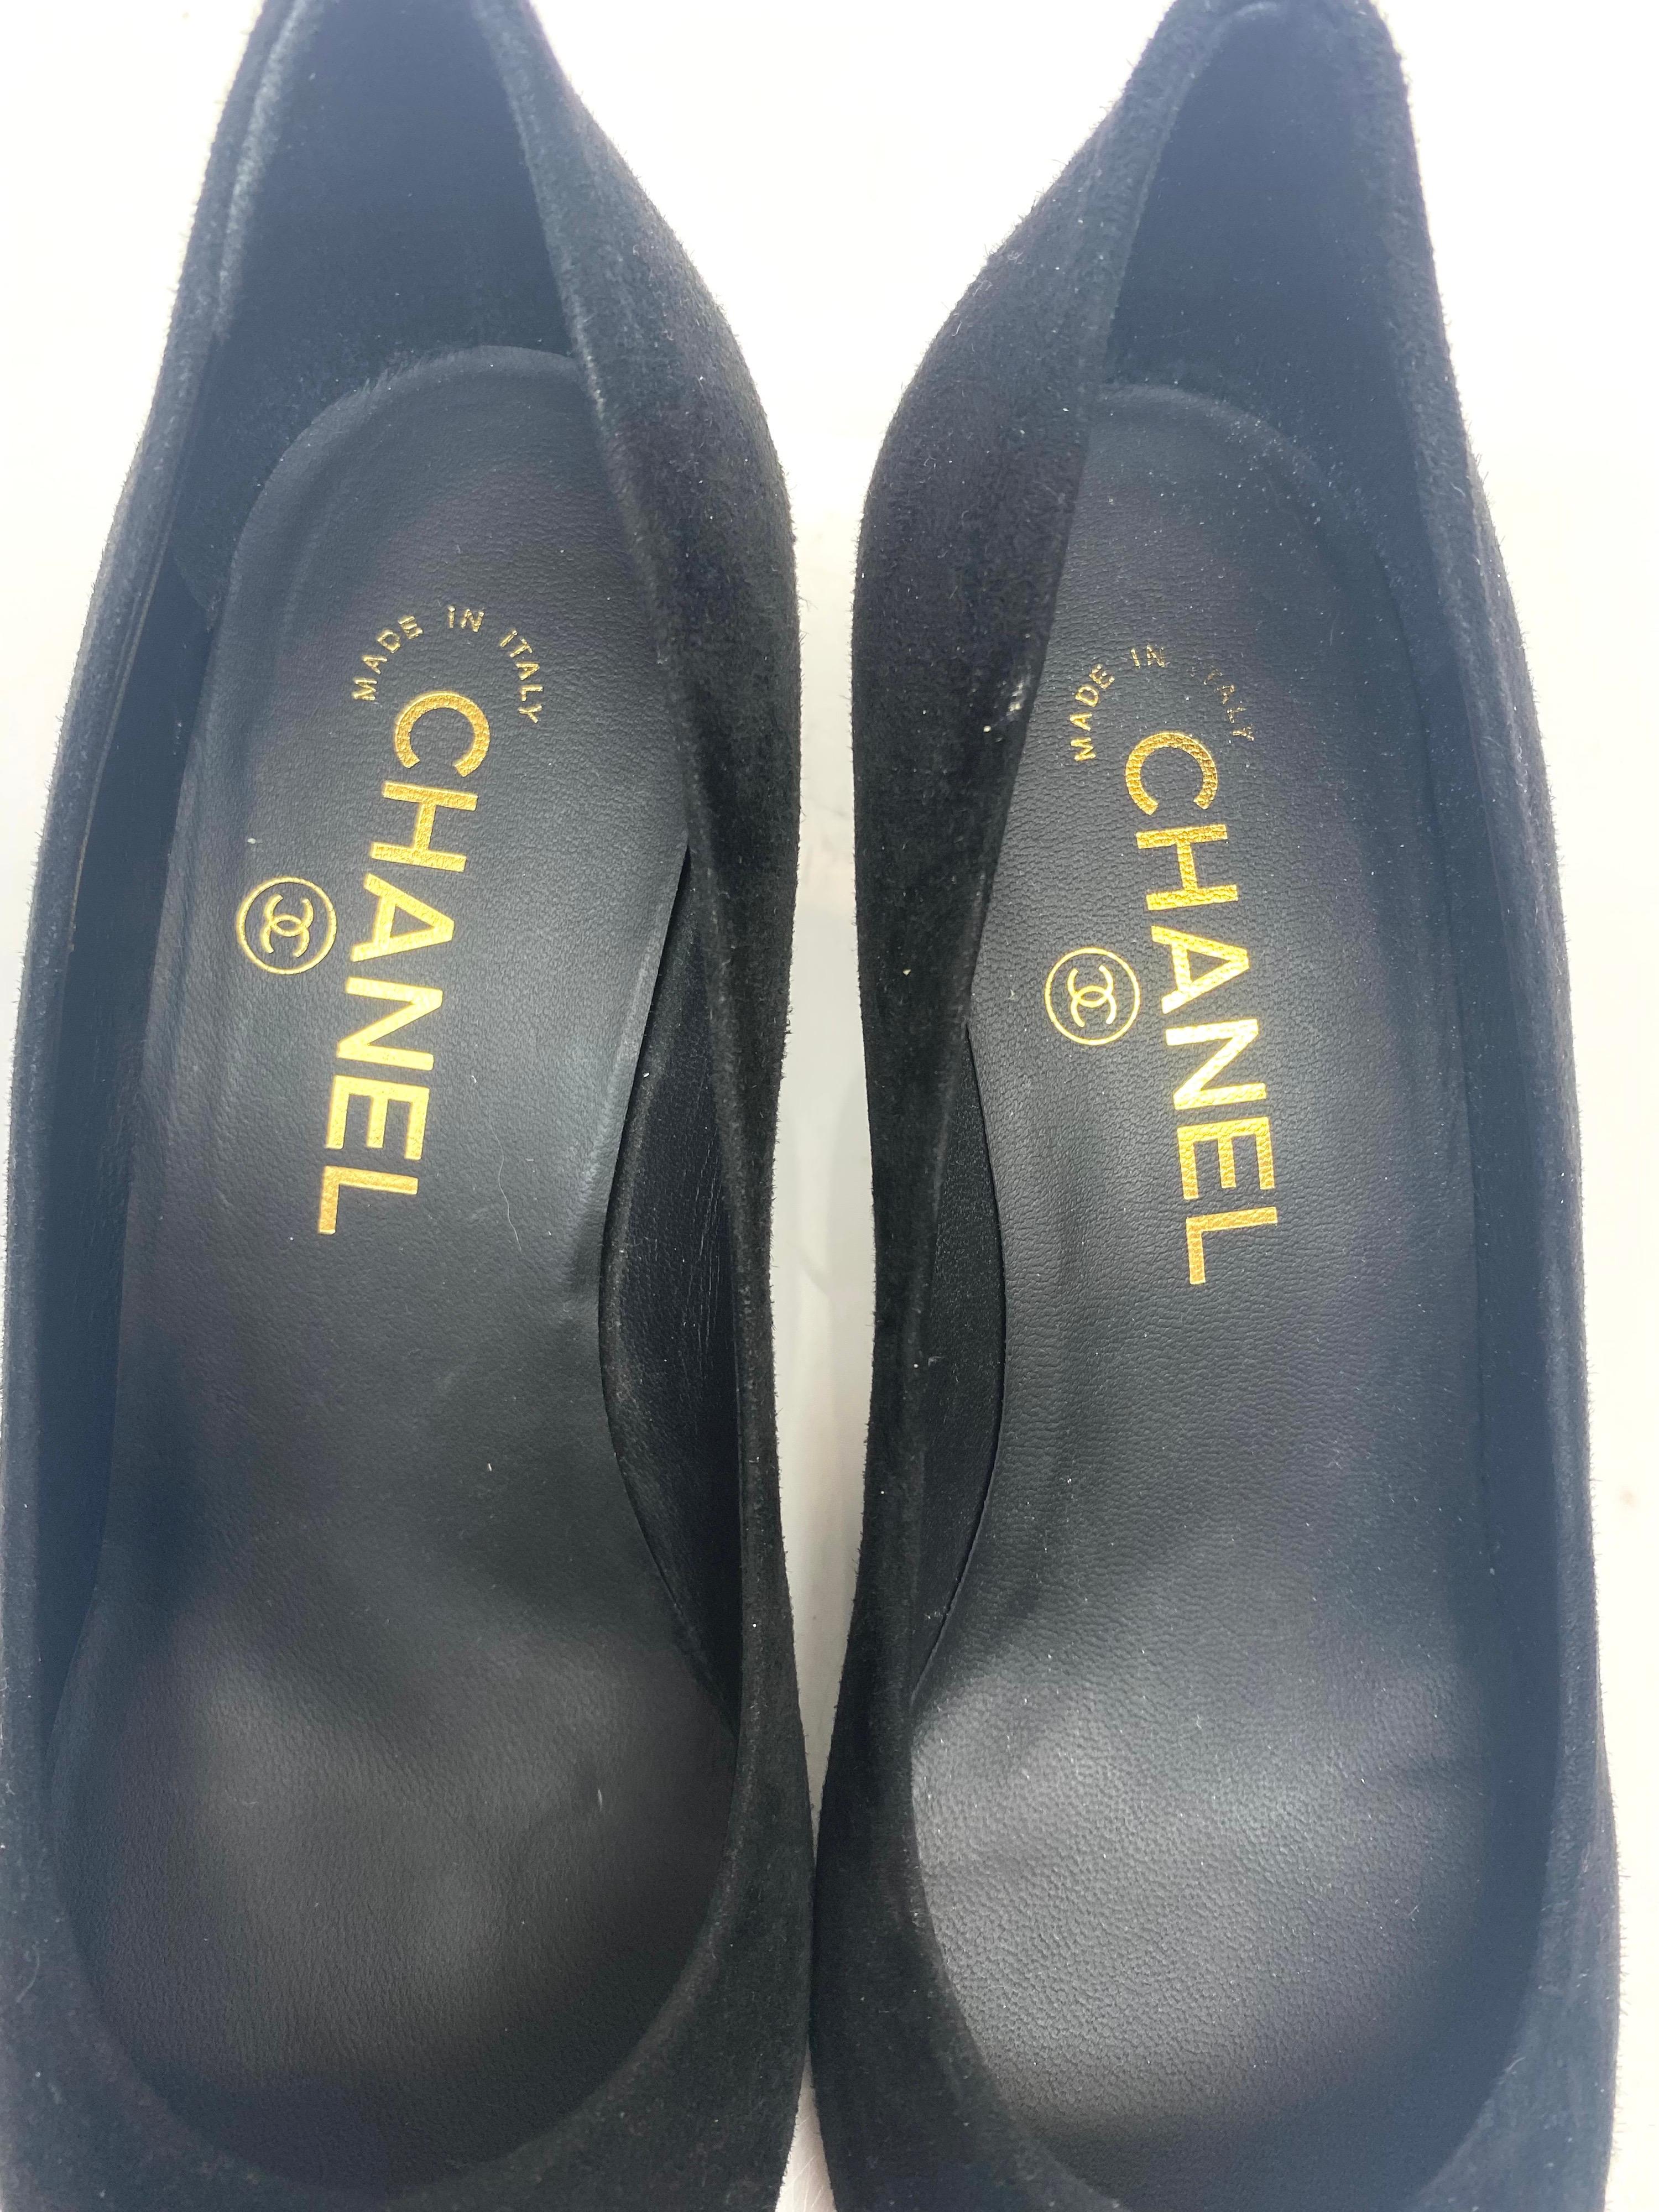 Chanel - Escarpins vintage en daim noir et gros grain, taille 36 4